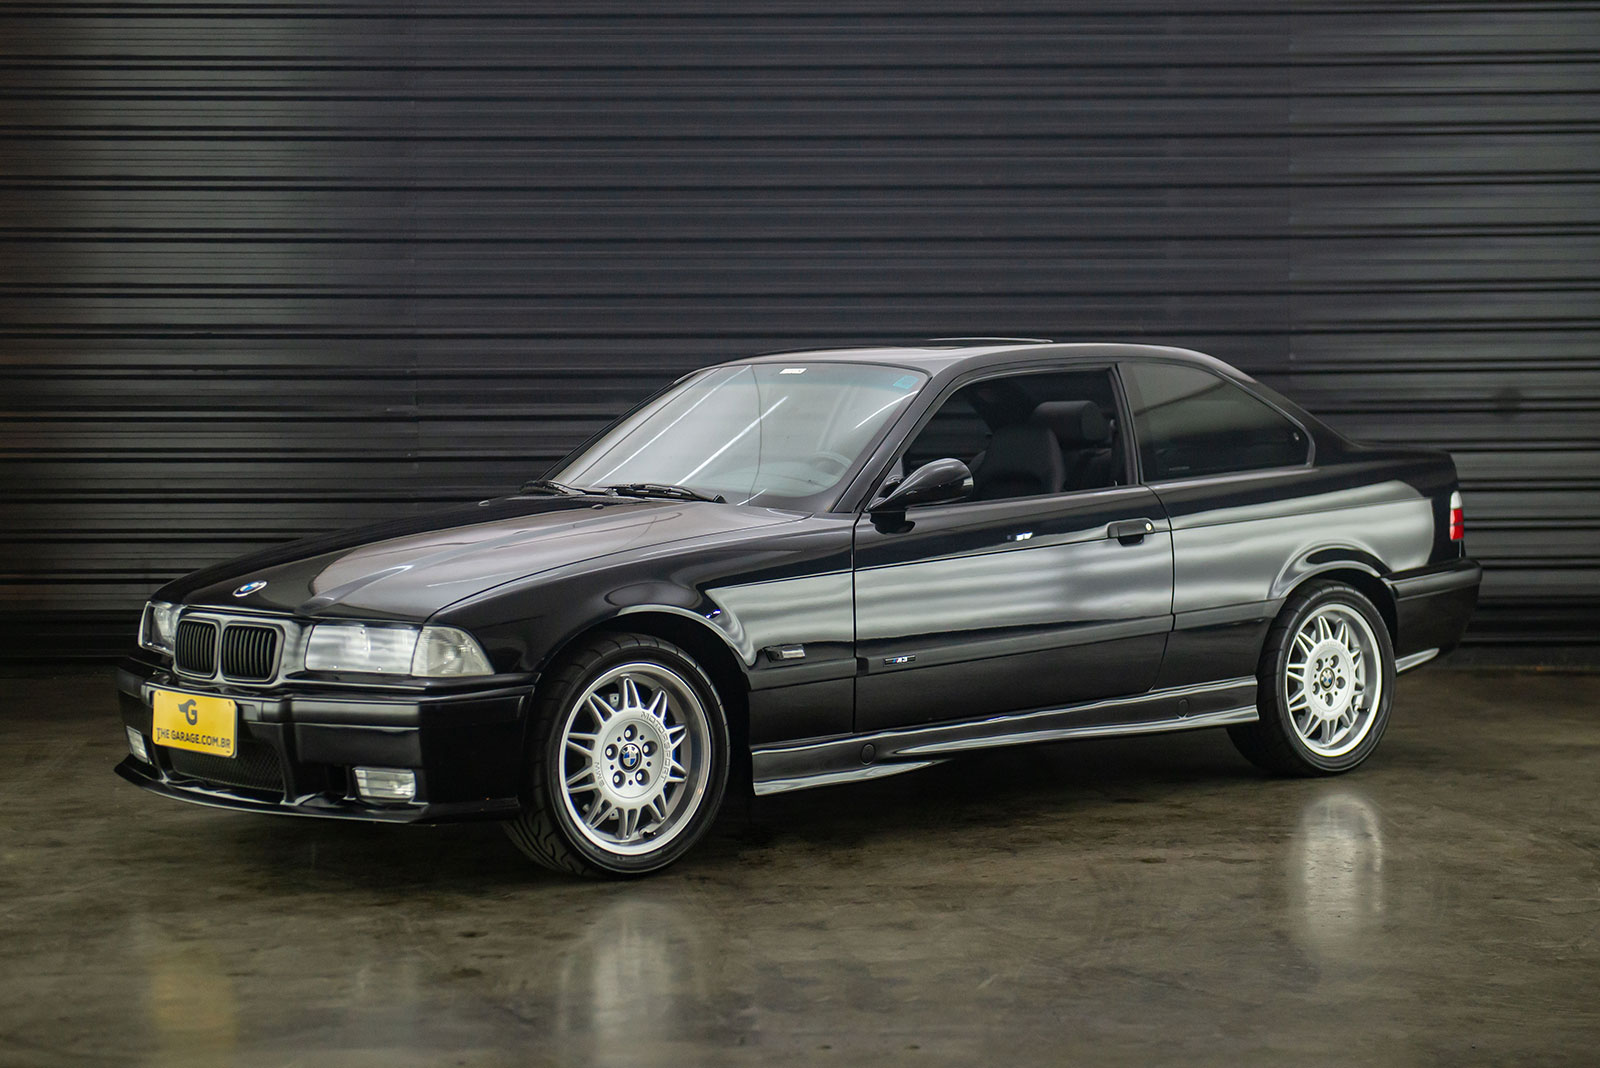 1995-BMW-M3-E36-a-venda-sao-paulo-sp-for-sale-the-garage-classicos-a-carros-antigos